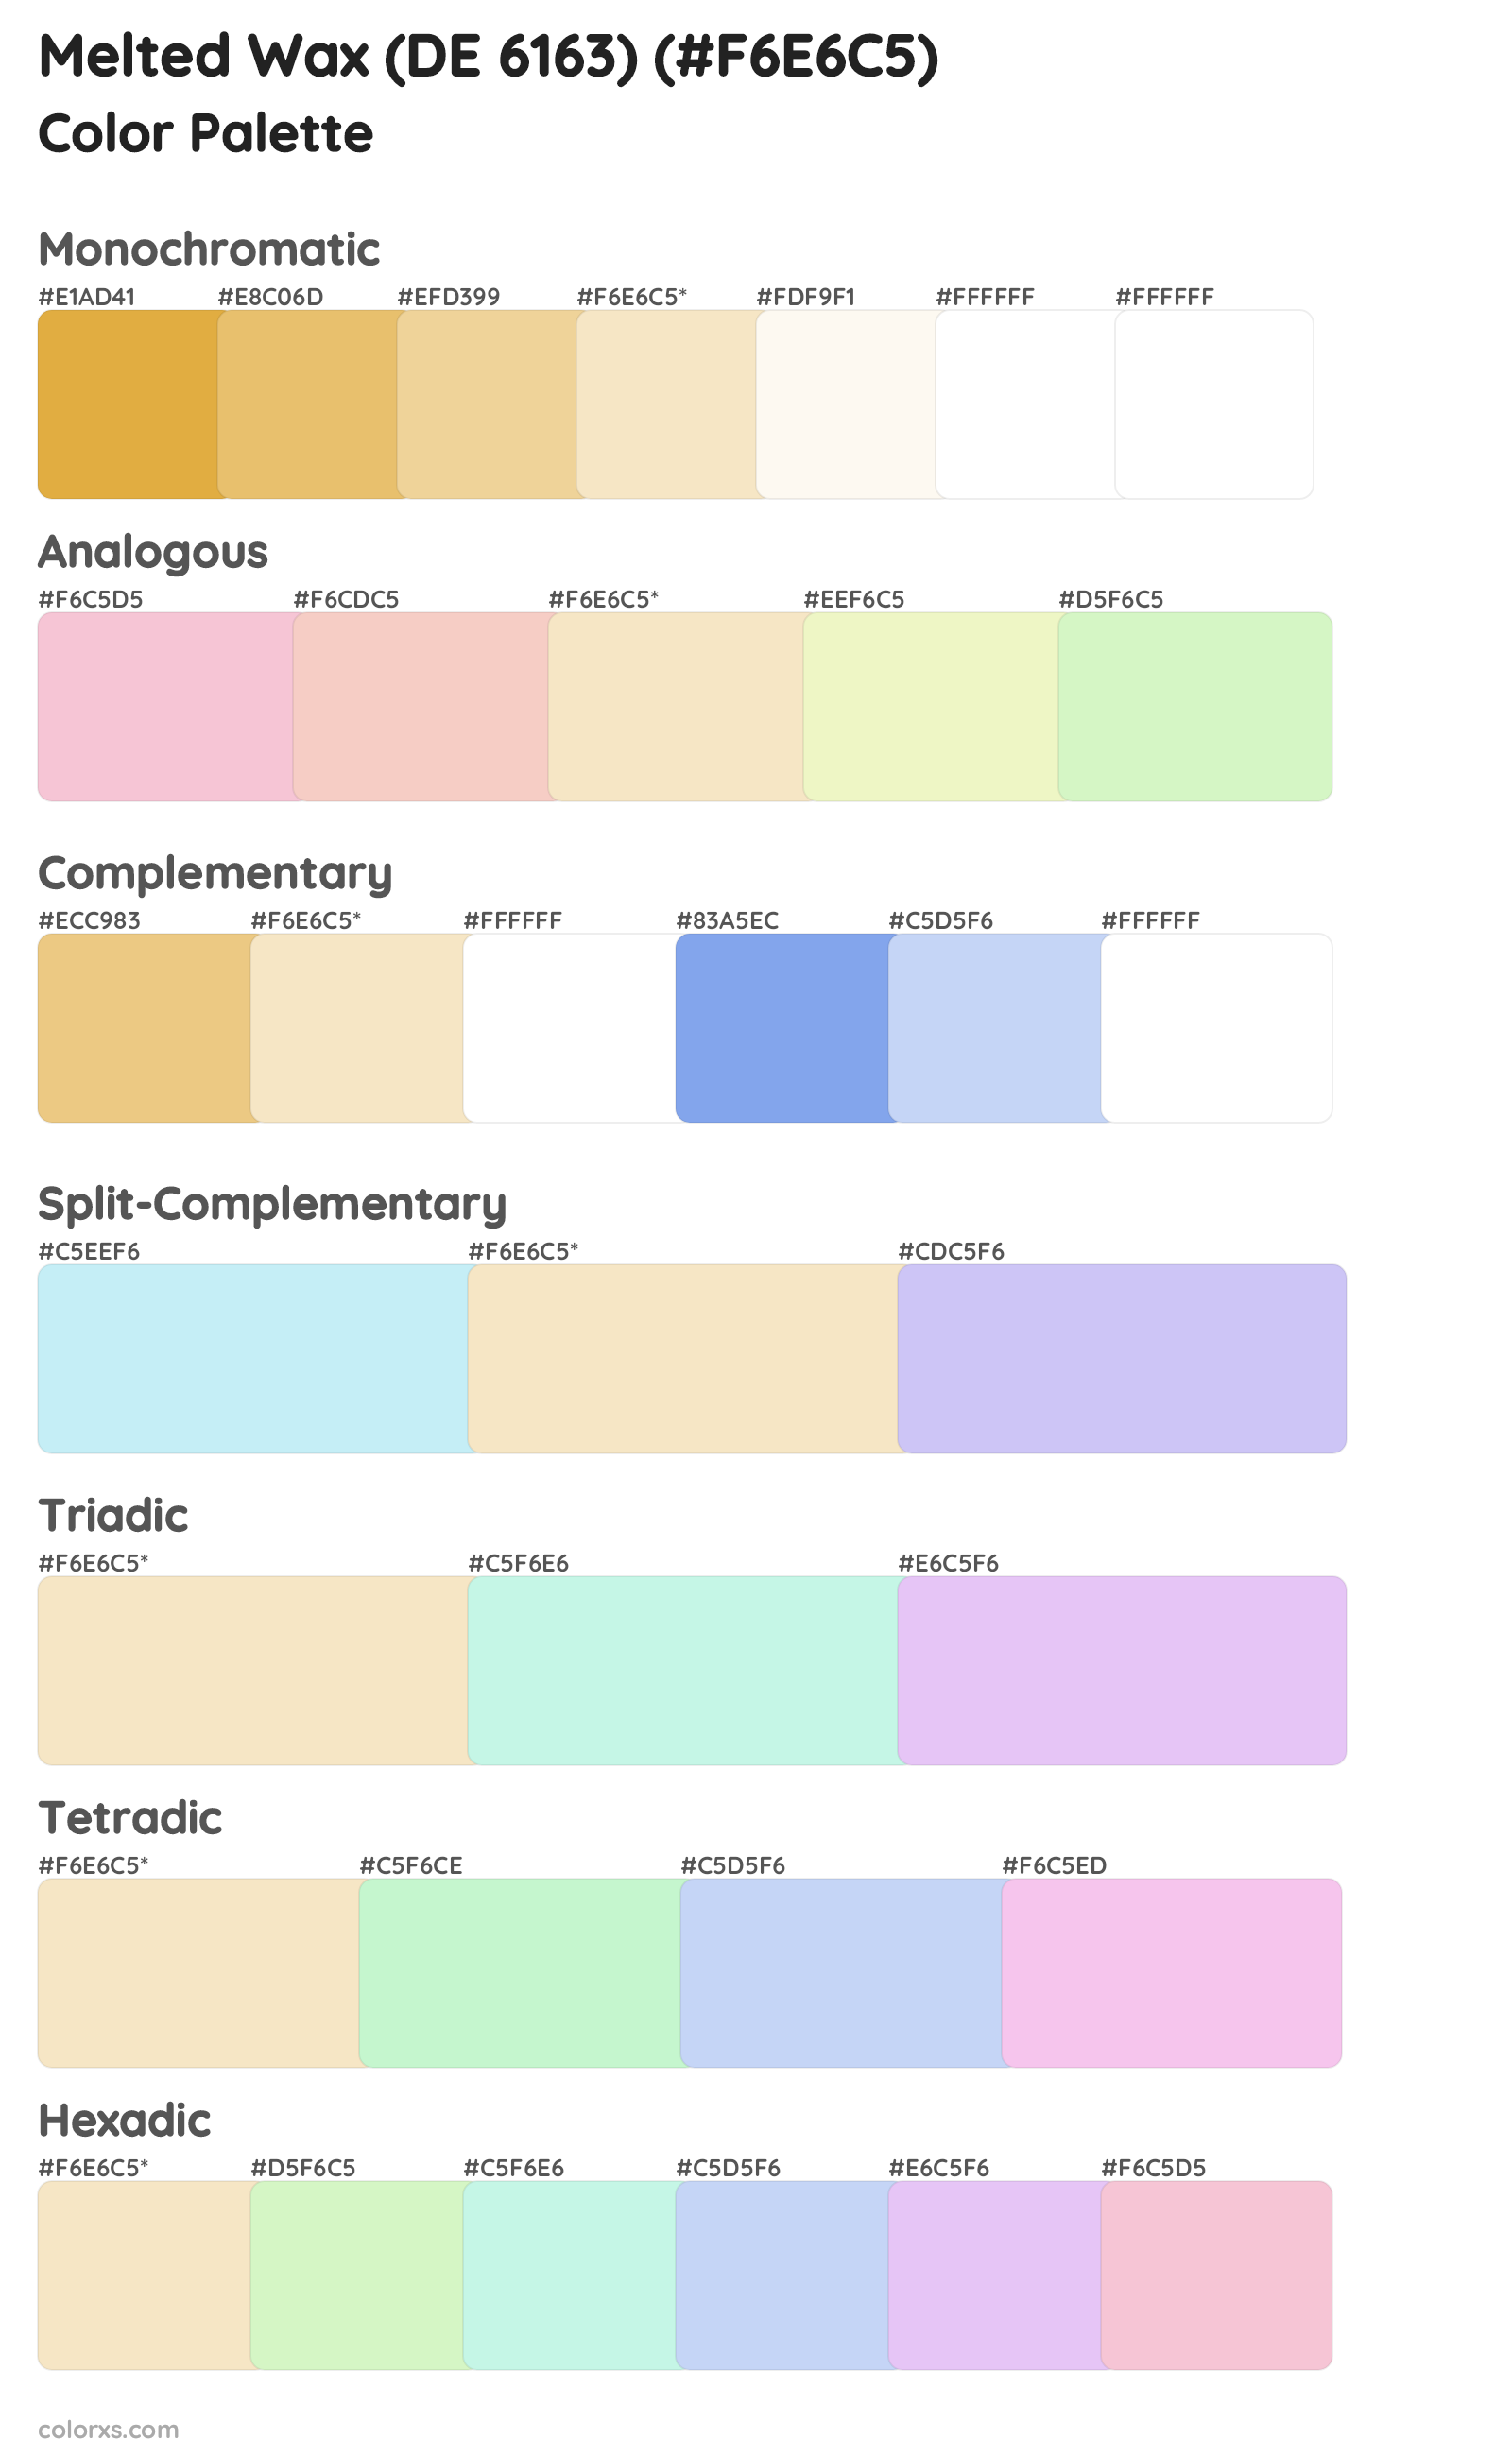 Melted Wax (DE 6163) Color Scheme Palettes